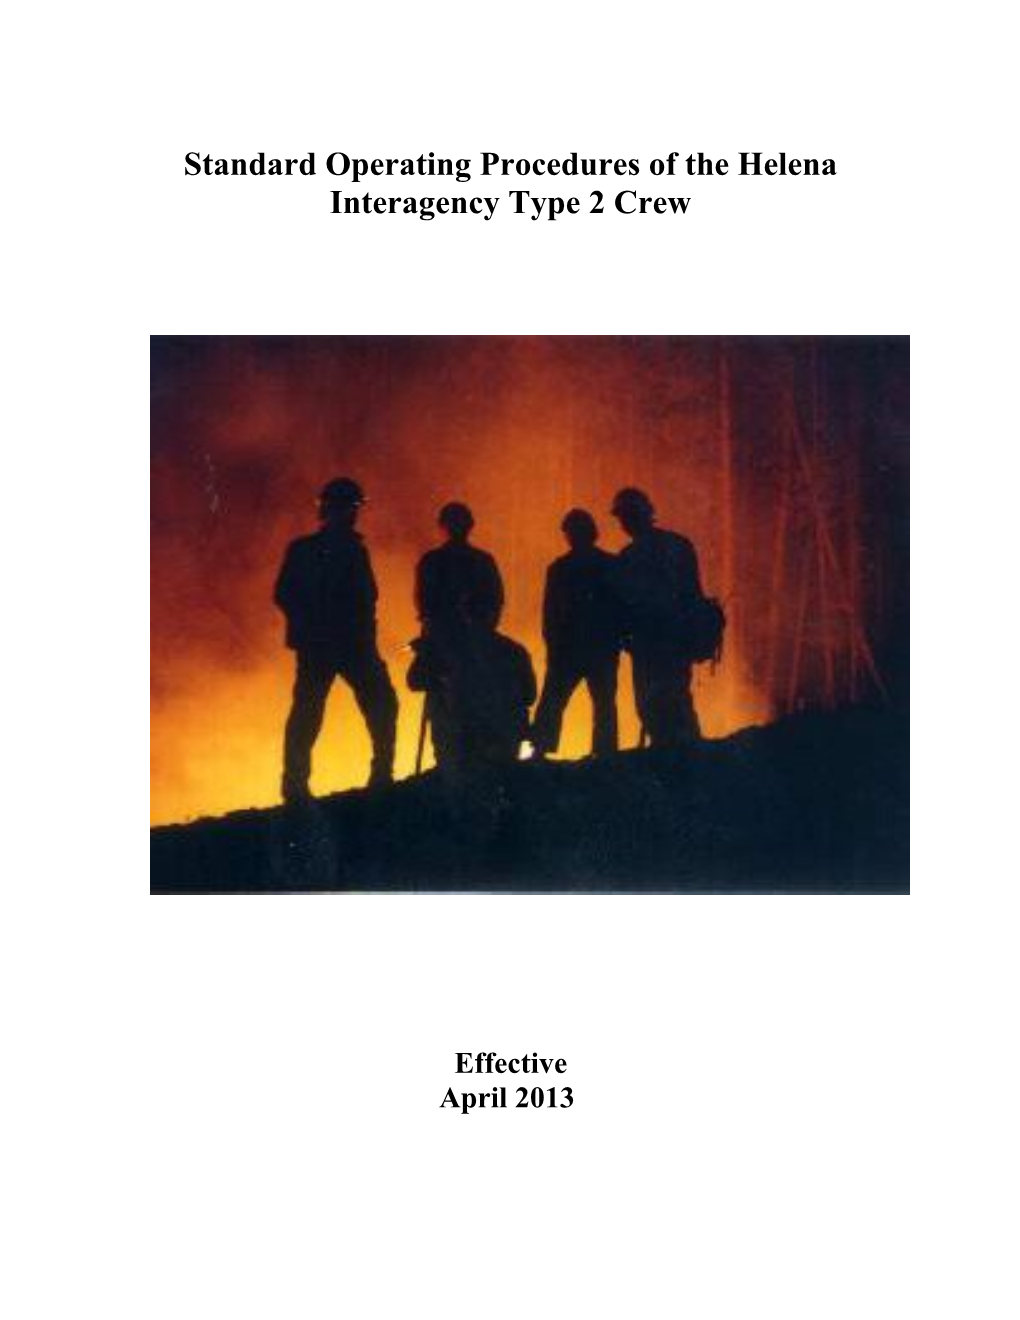 Standard Operating Procedures of the Helena Interagency Type 2 Crew